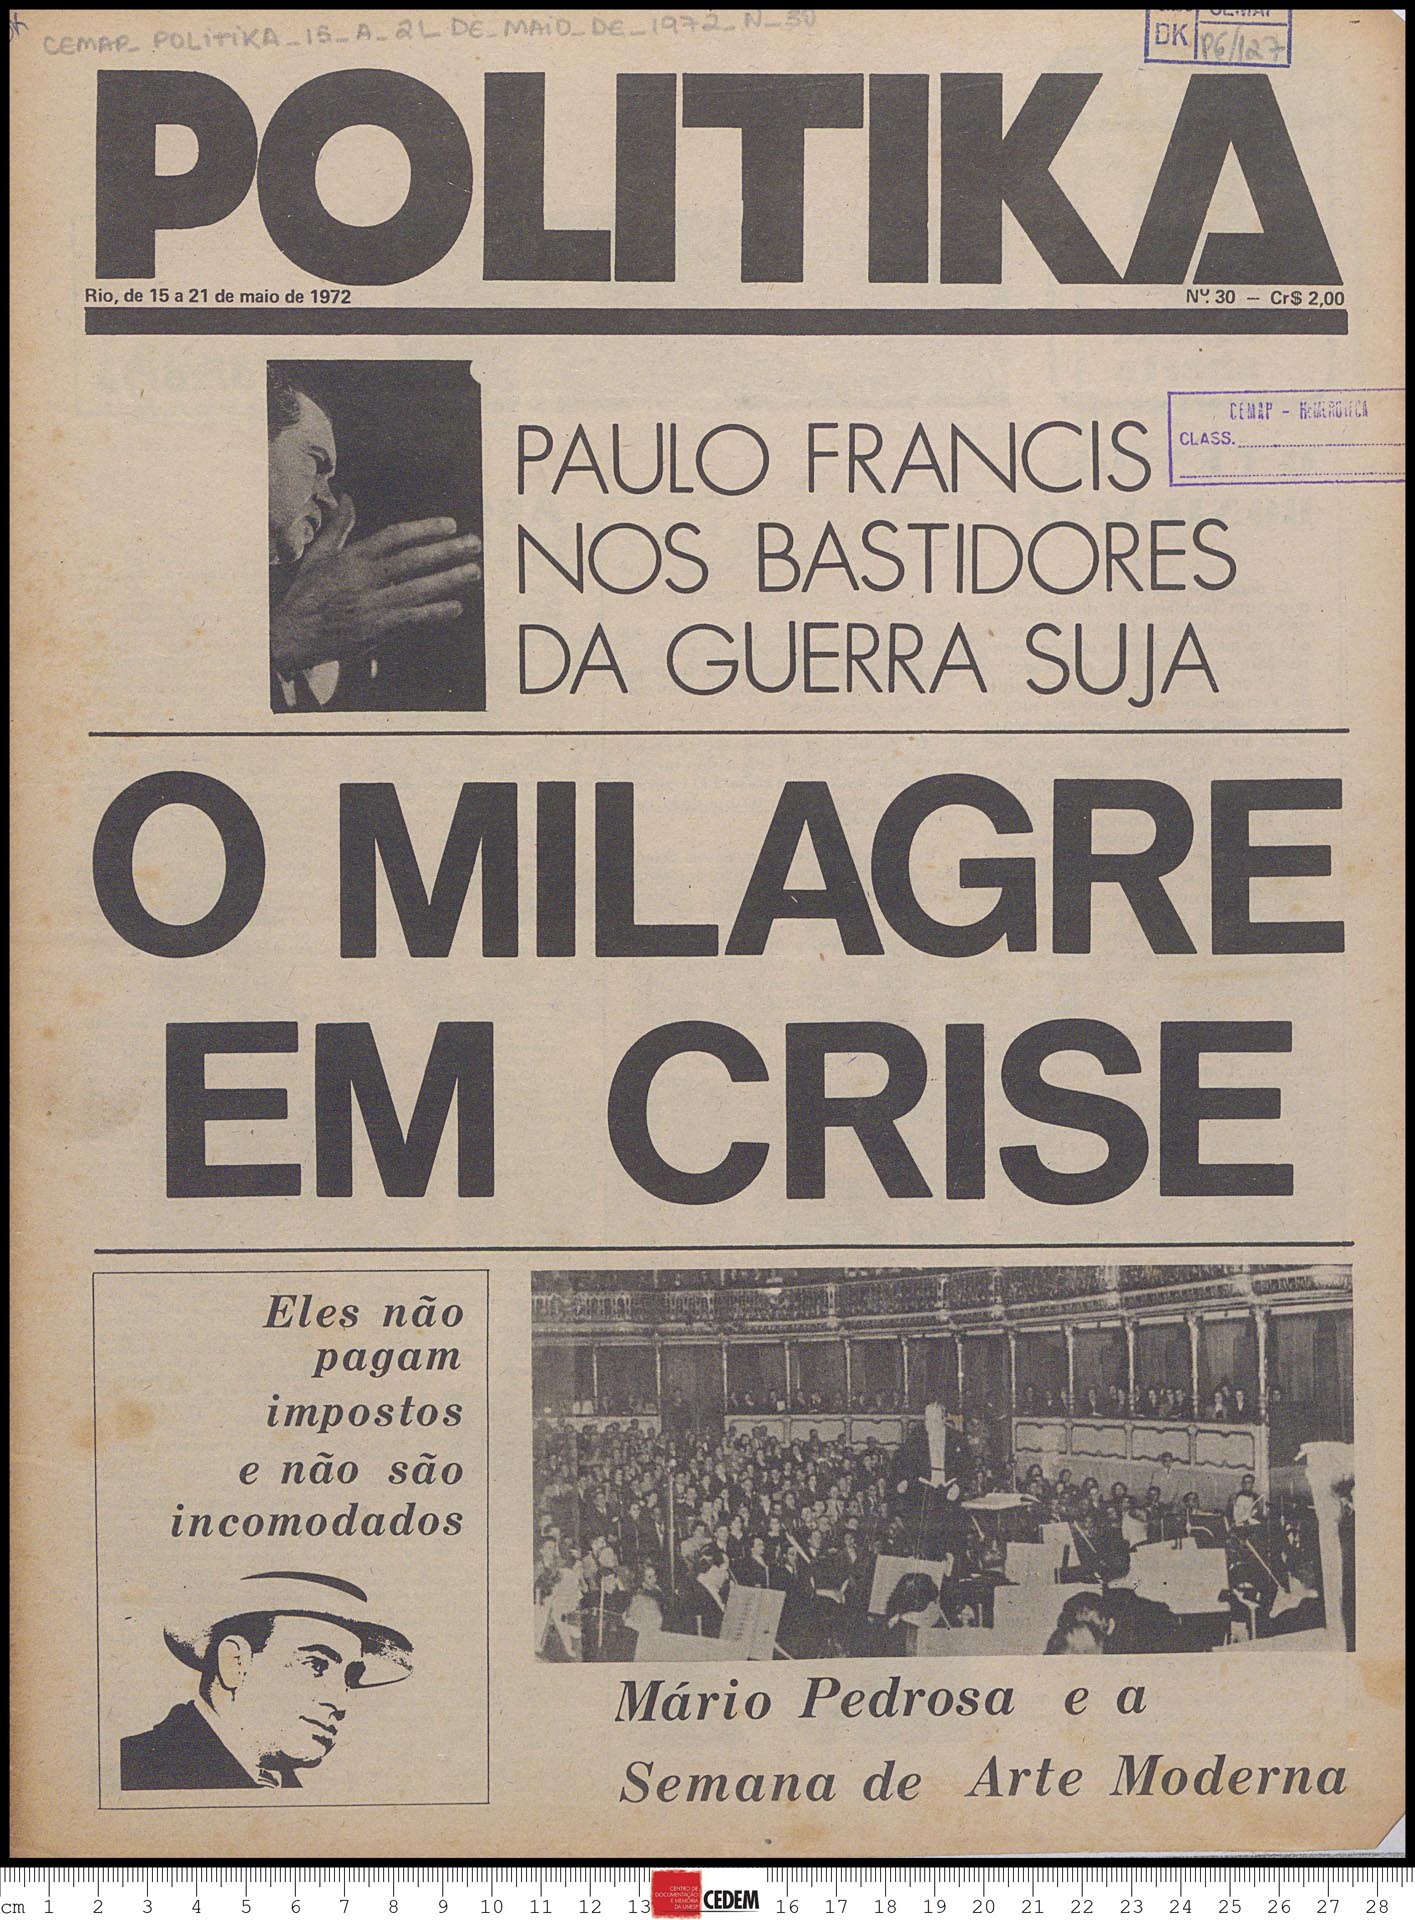 Politika - 30 - 15 a 21 de mai. 1972